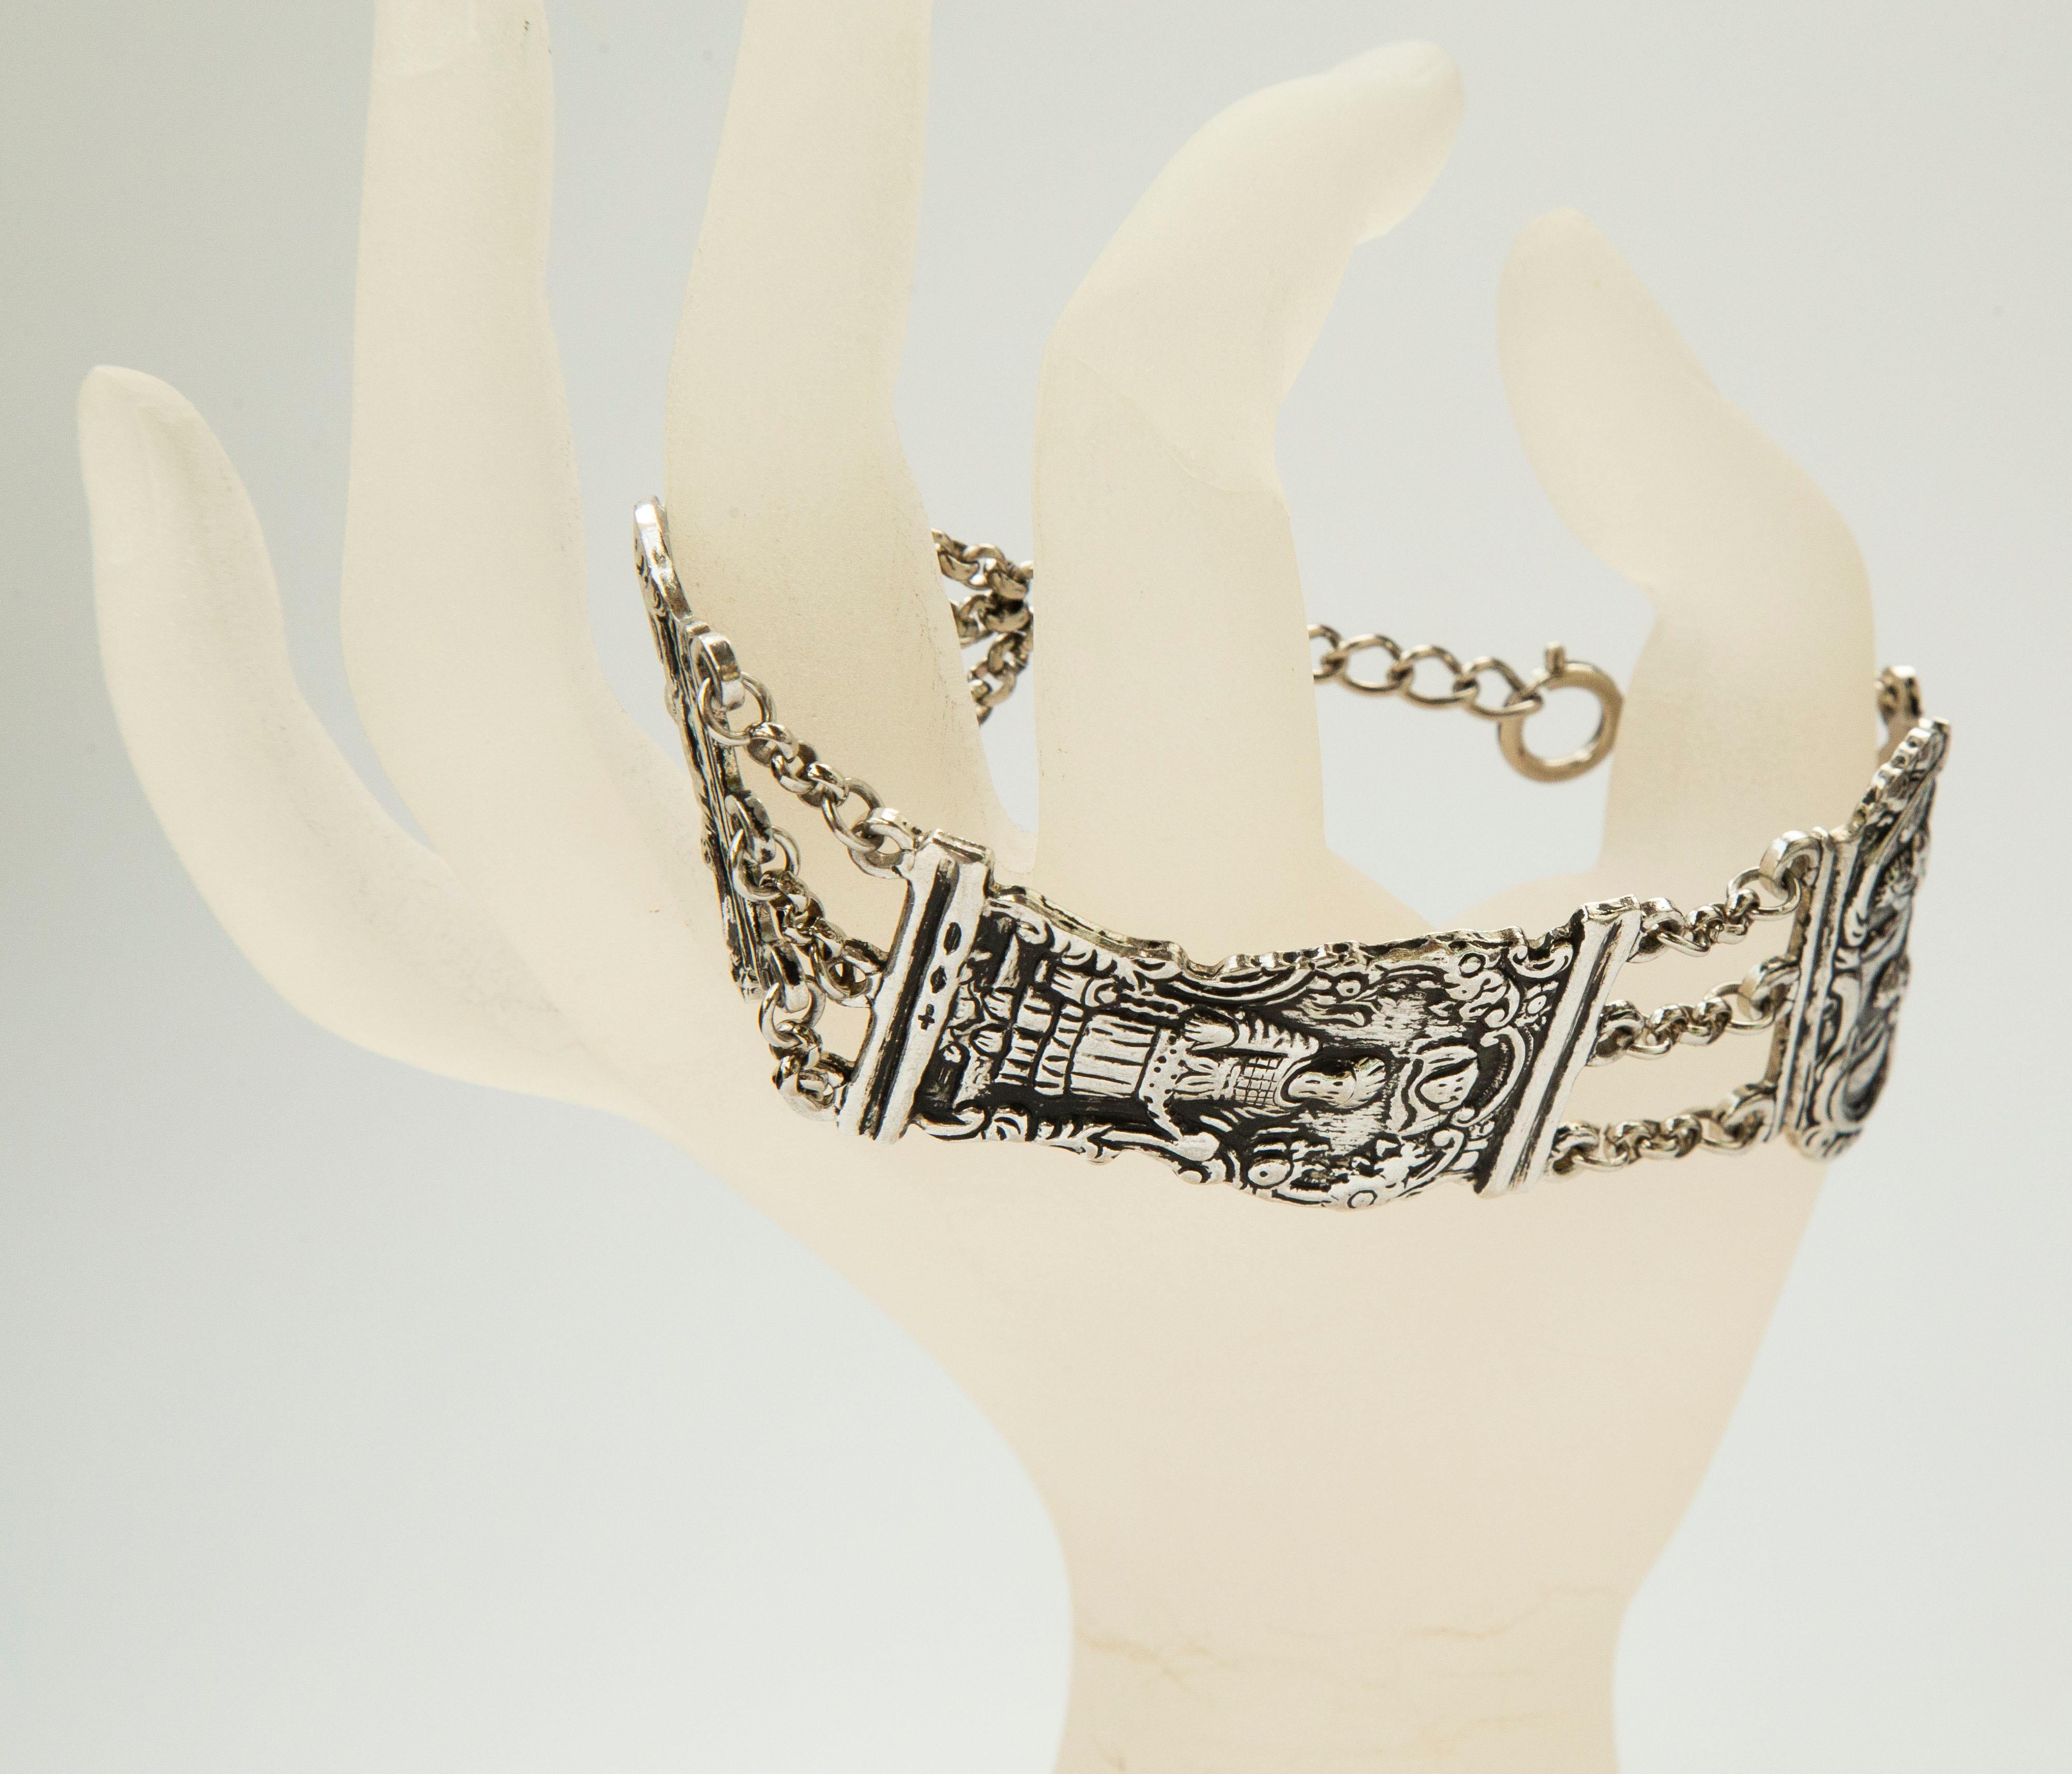 Ein Silberarmband mit antikem Bibelverschluss aus dem Jahre 1700/1800. Die freien Glieder des Armbands stellen verschiedene biblische Figuren auf einem floralen Hintergrund dar und sind durch eine dreireihige Kette miteinander verbunden. Das Armband